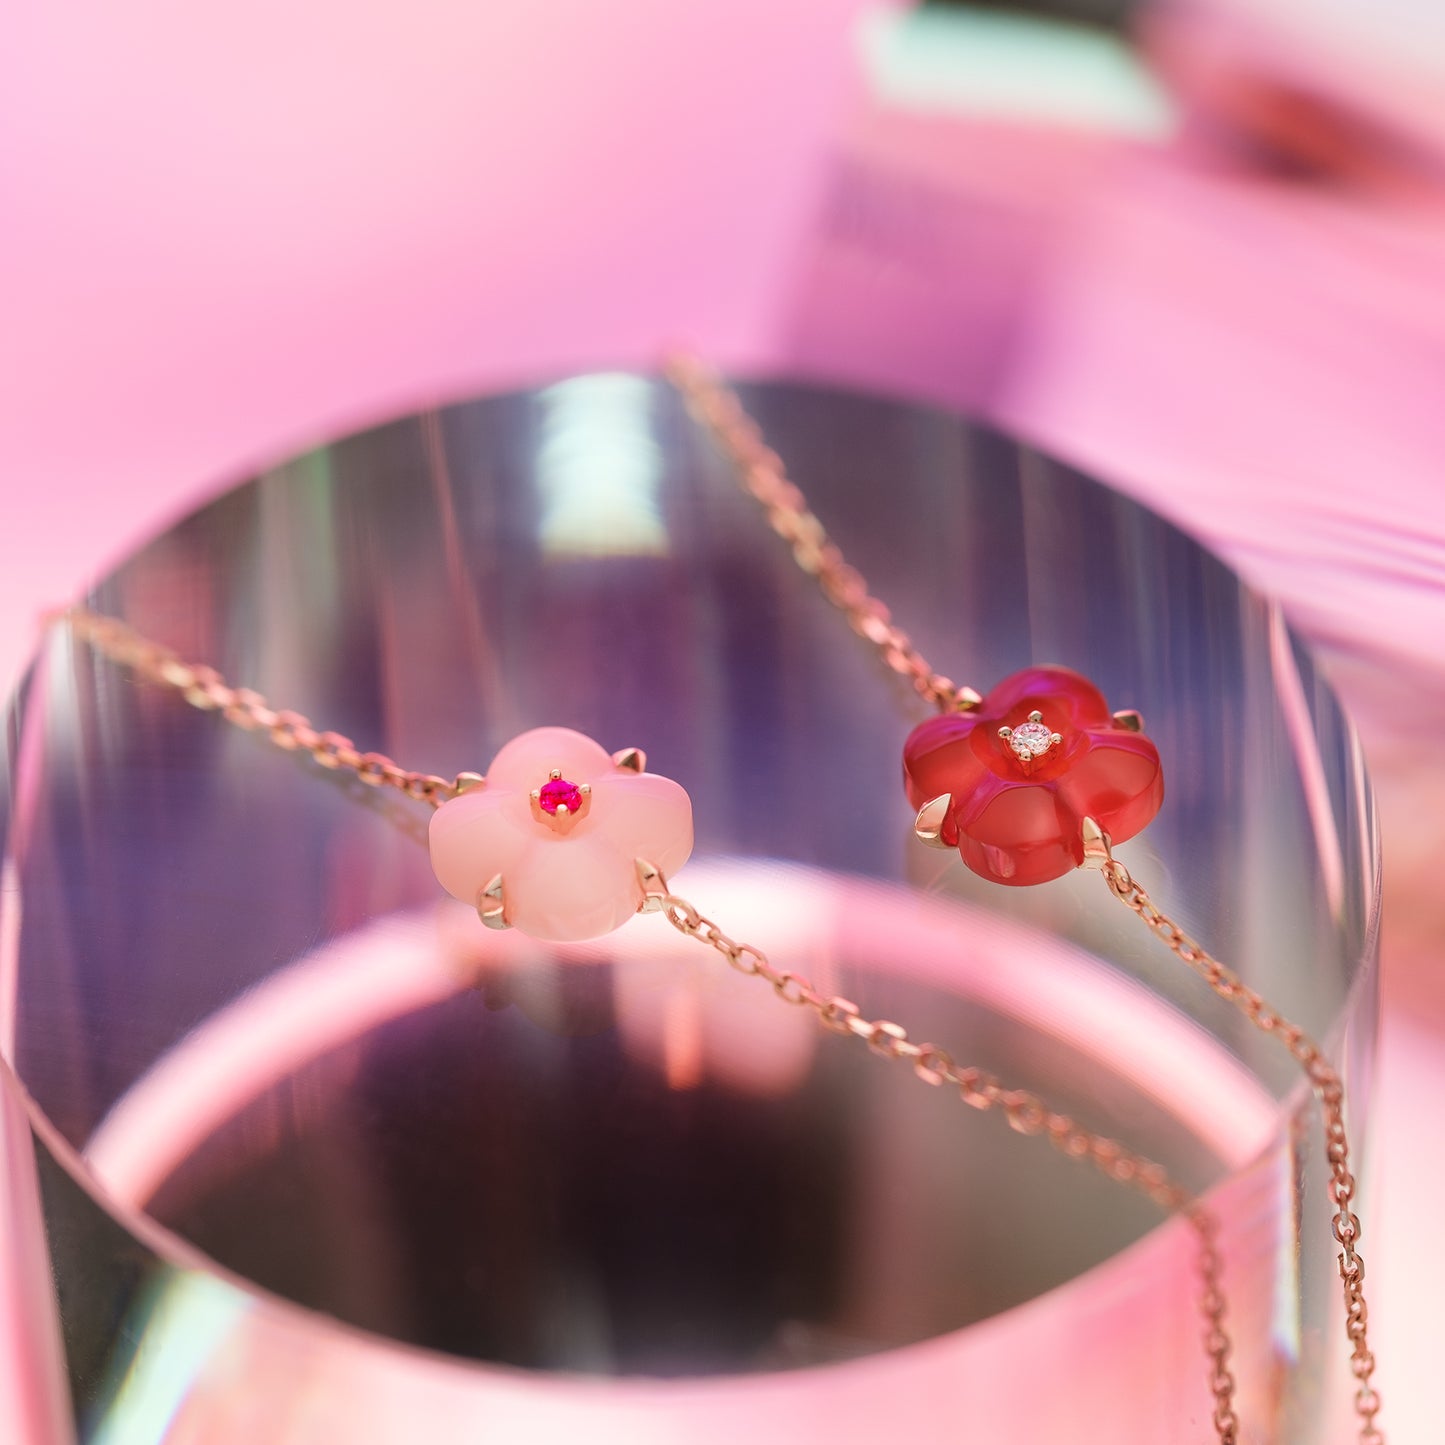 THIALH - 許願池系列 - 迷你粉紅歐珀和紅色尖晶石手鍊